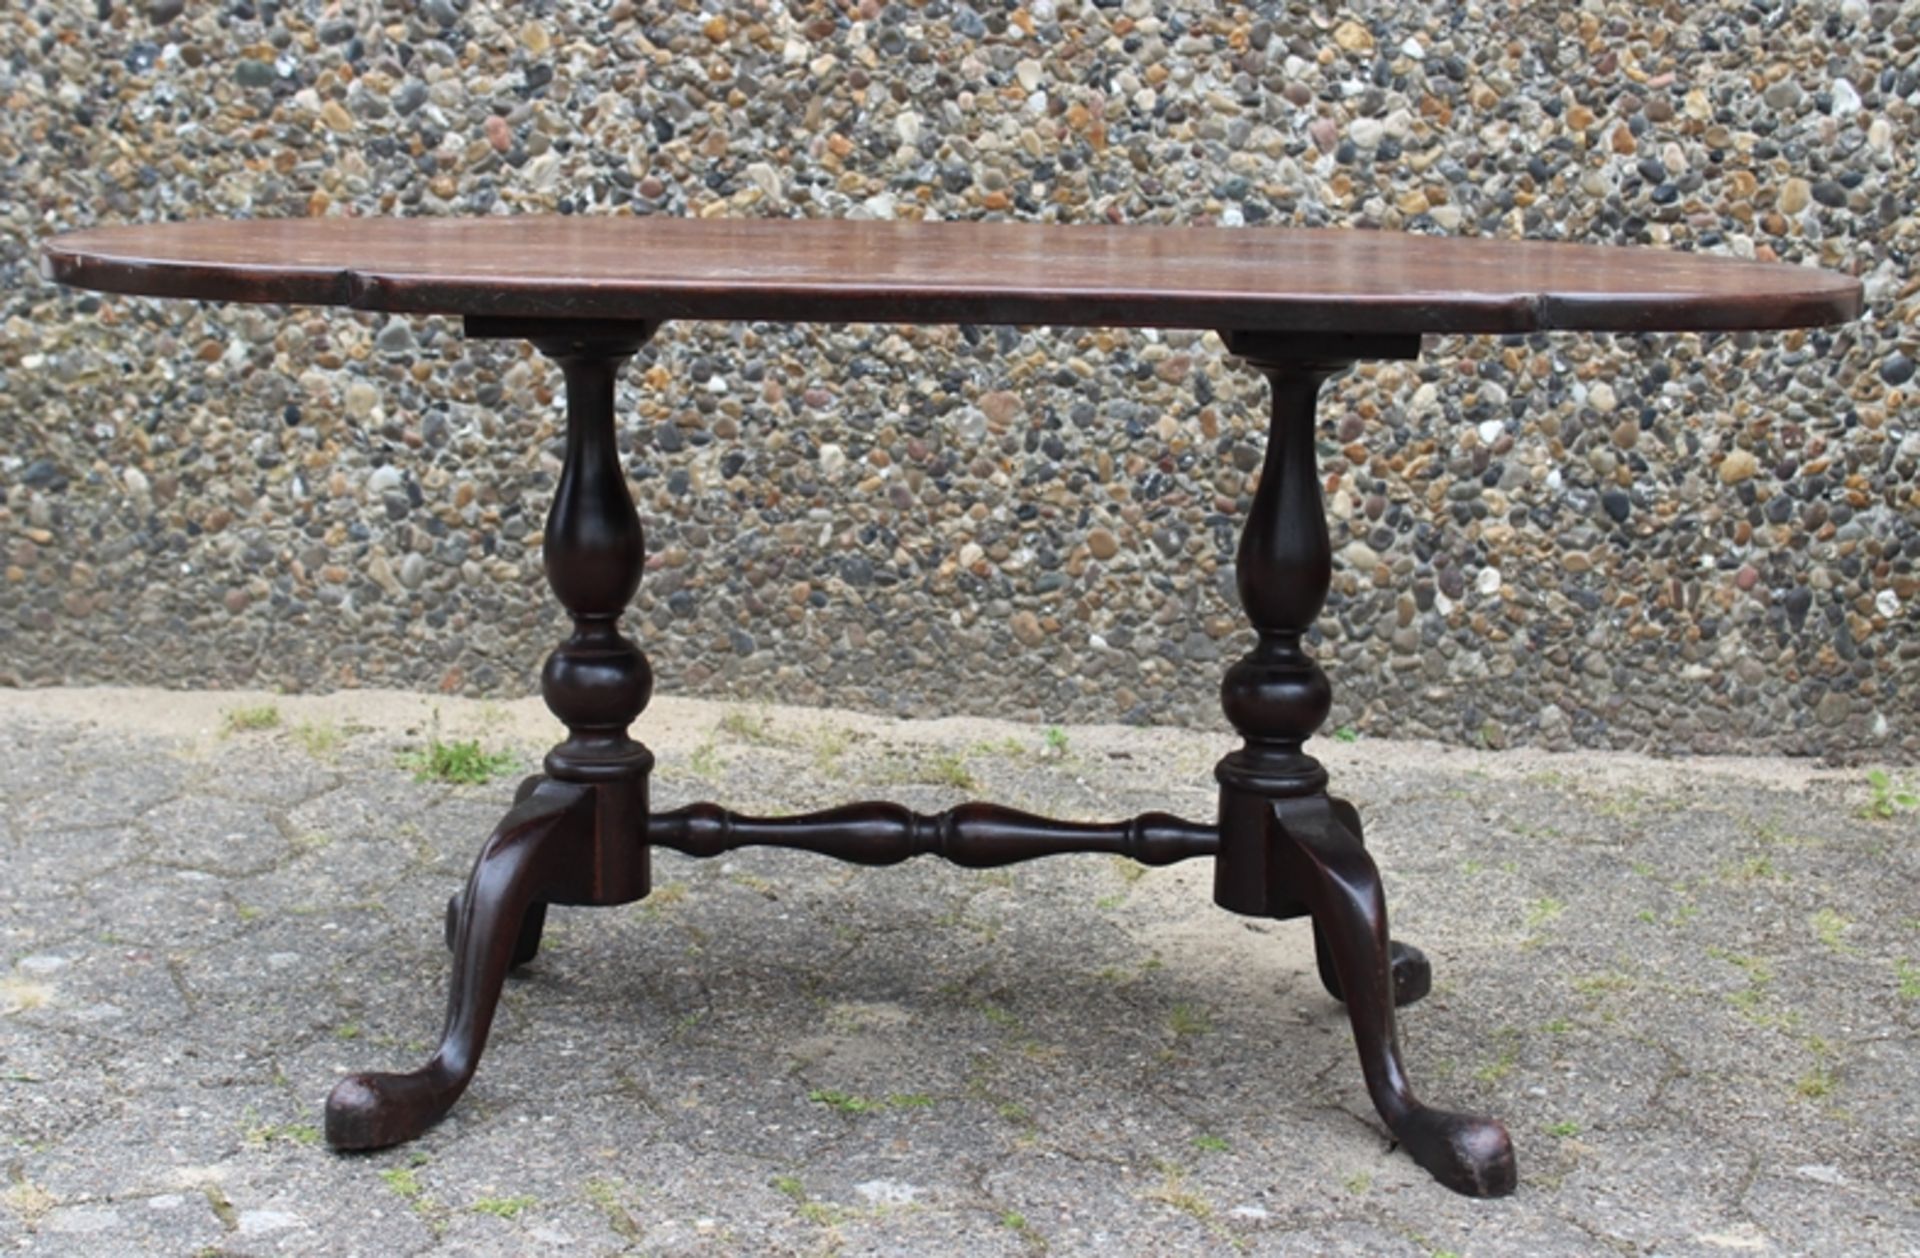 ovaler Tisch um 1900, Alters-u. Gebrauchsspuren, 1x Leimstelle gelöst, H-51cm B-108cm T-54,5cm. - Bild 2 aus 6